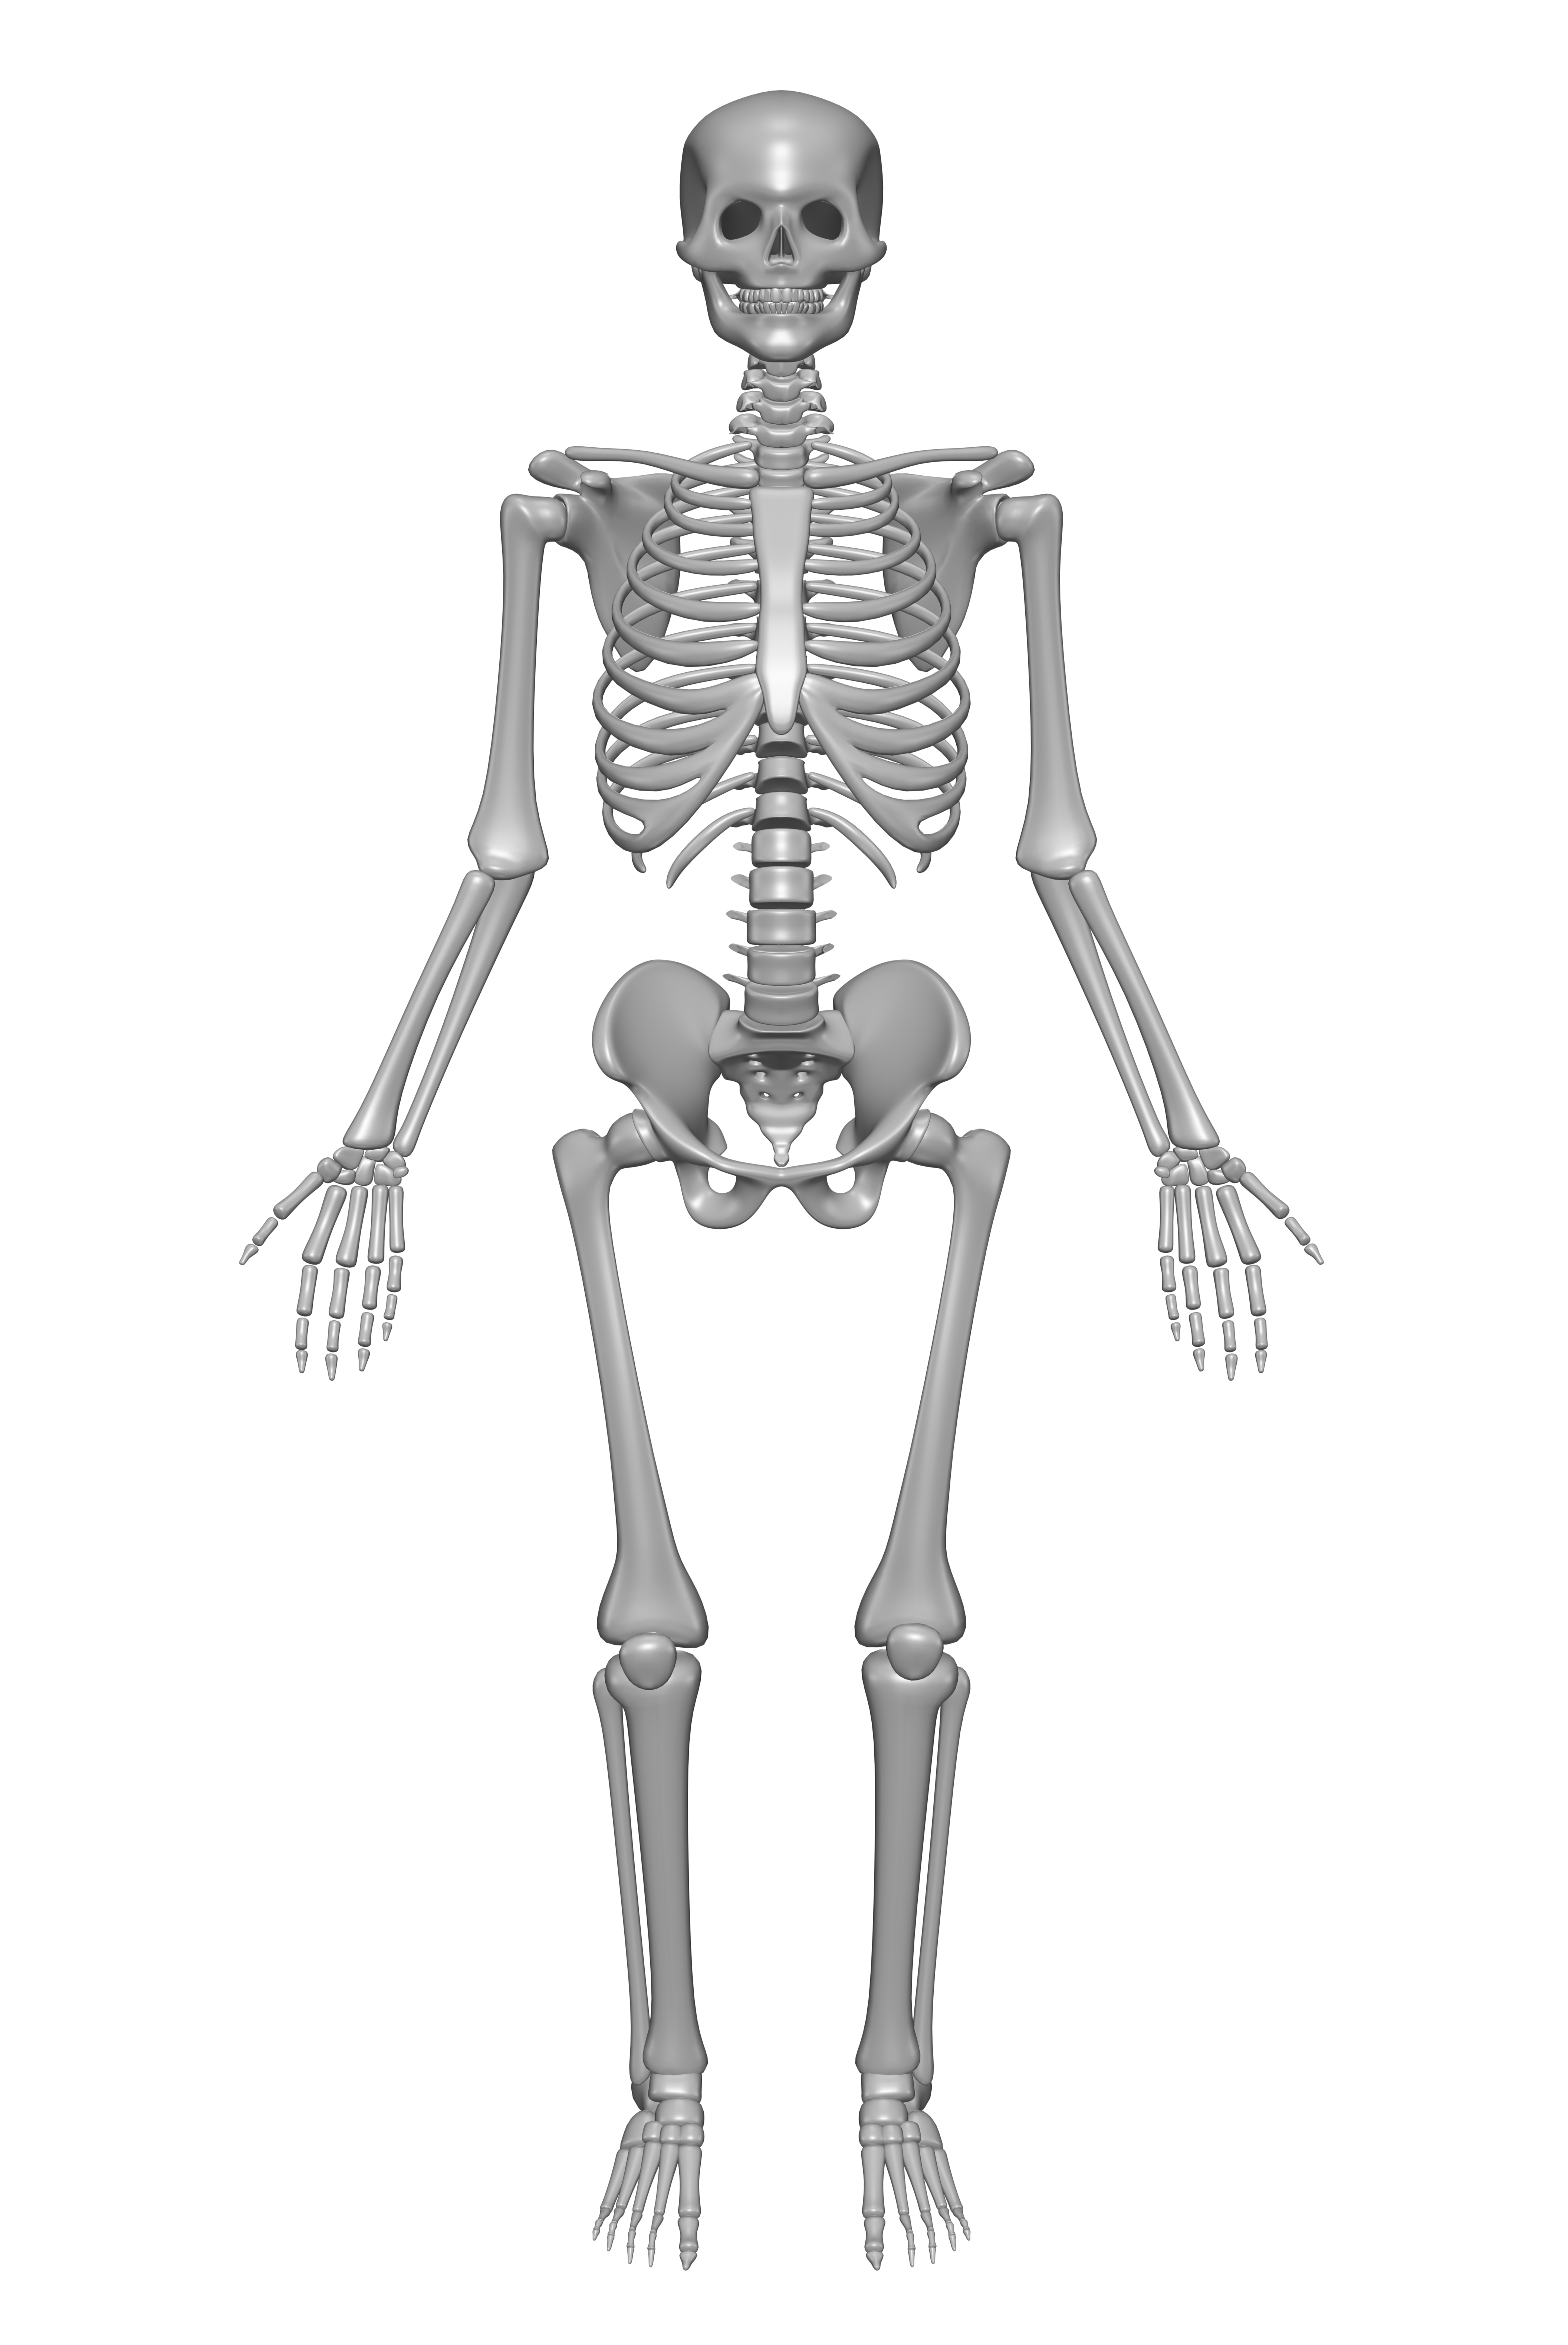 Human Skeleton Drawing Free Image Download - Vrogue